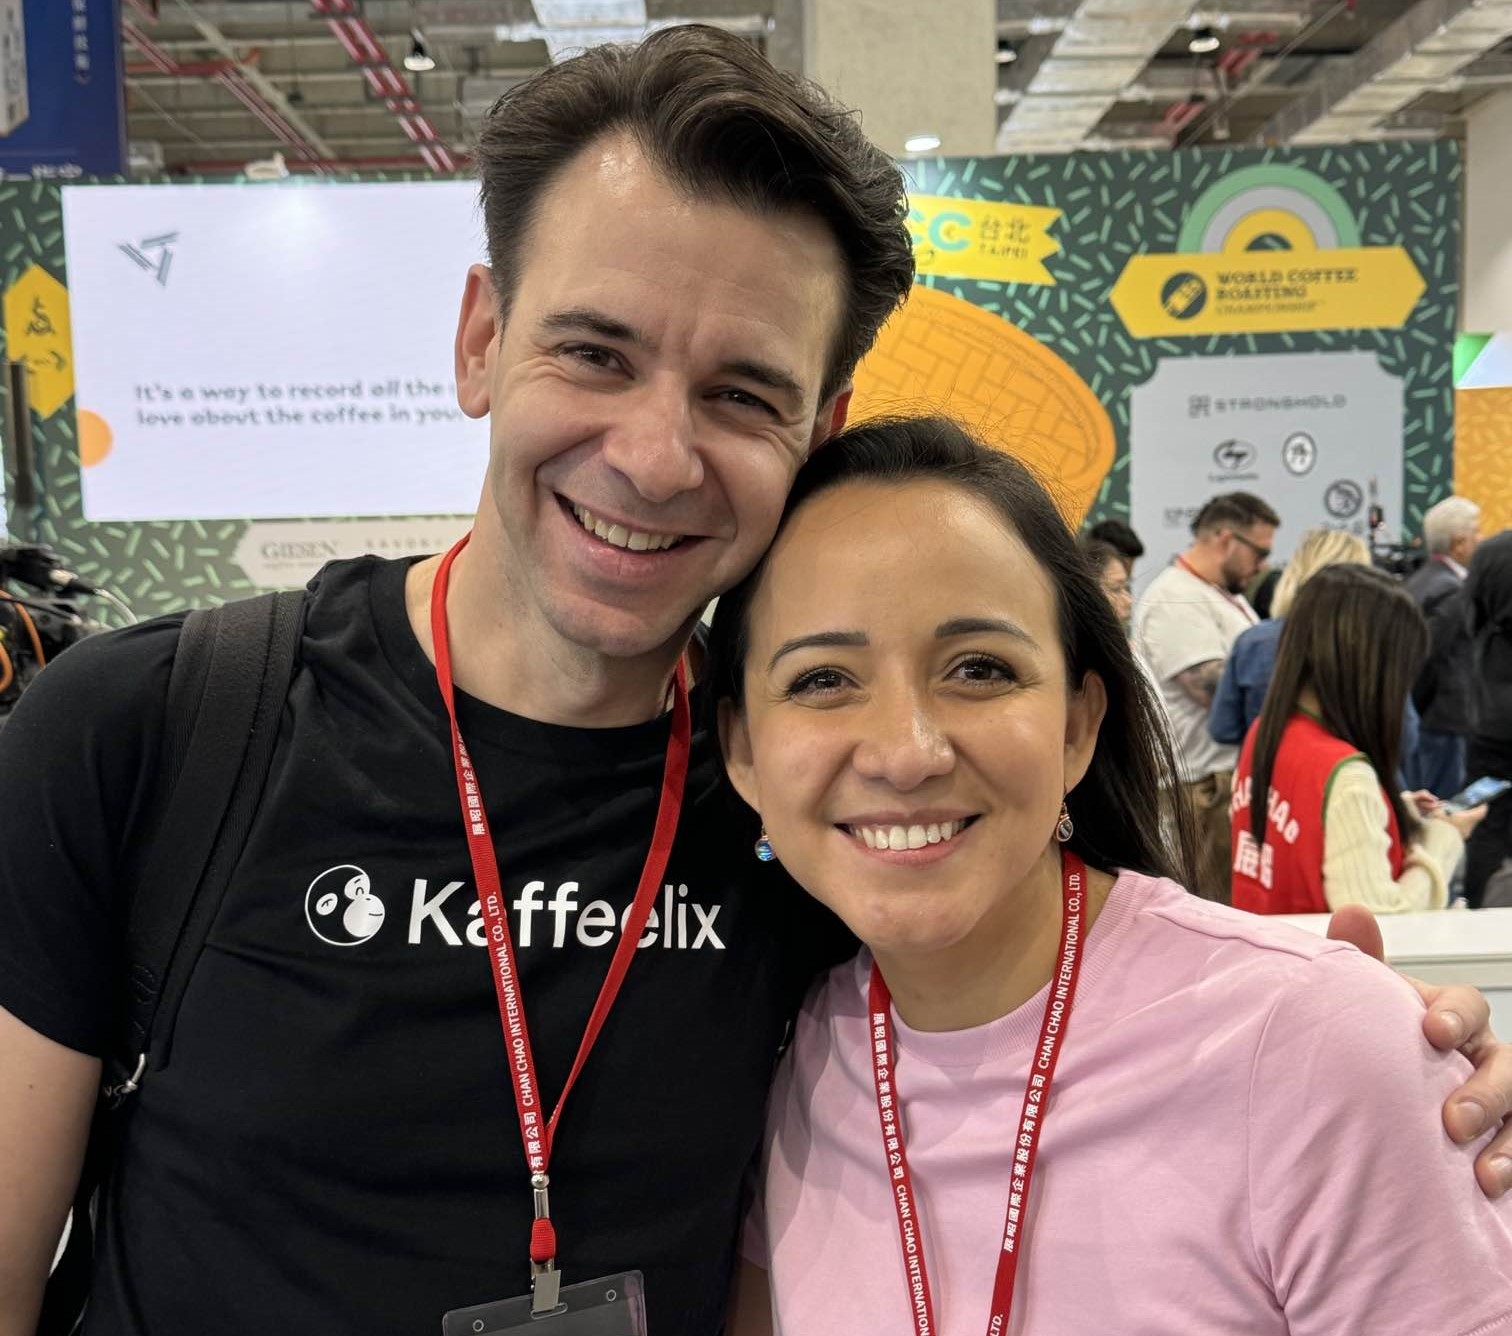 Stephanie Gonzalez of Savor Brands with Felix Teiretzbacher, 2022 World Coffee Roasting Champion and owner of Kaffeelix